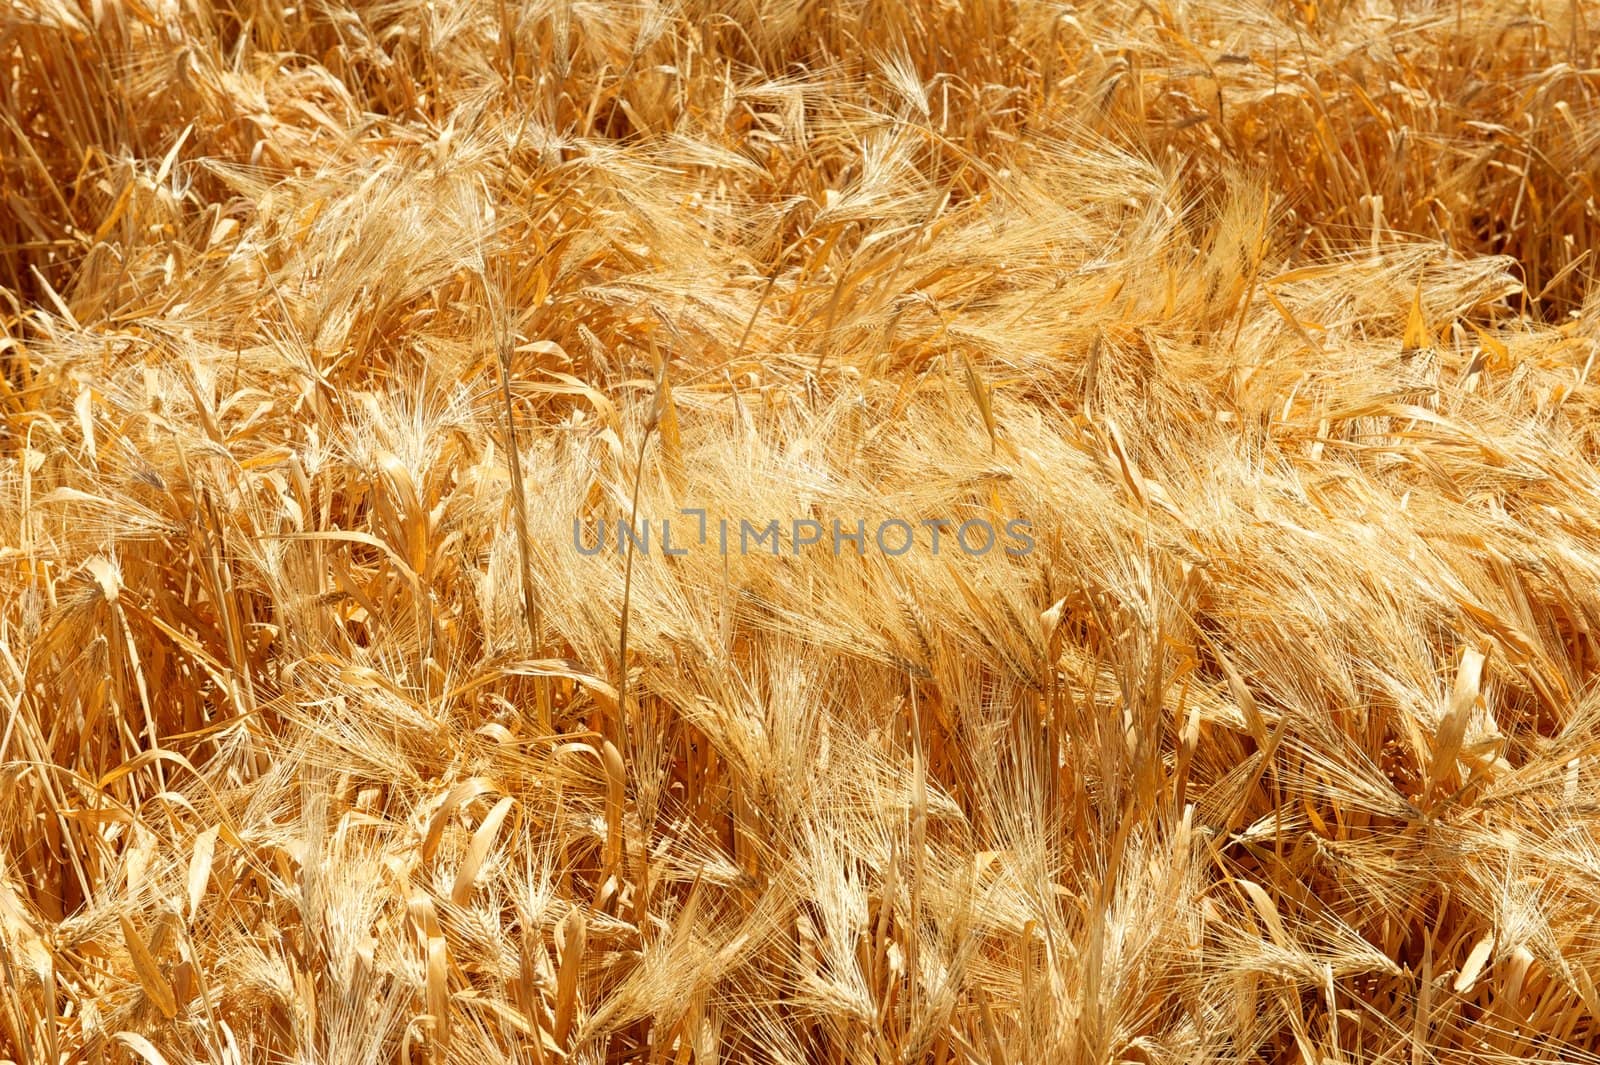 Swirling Grain Stalks by pixelsnap